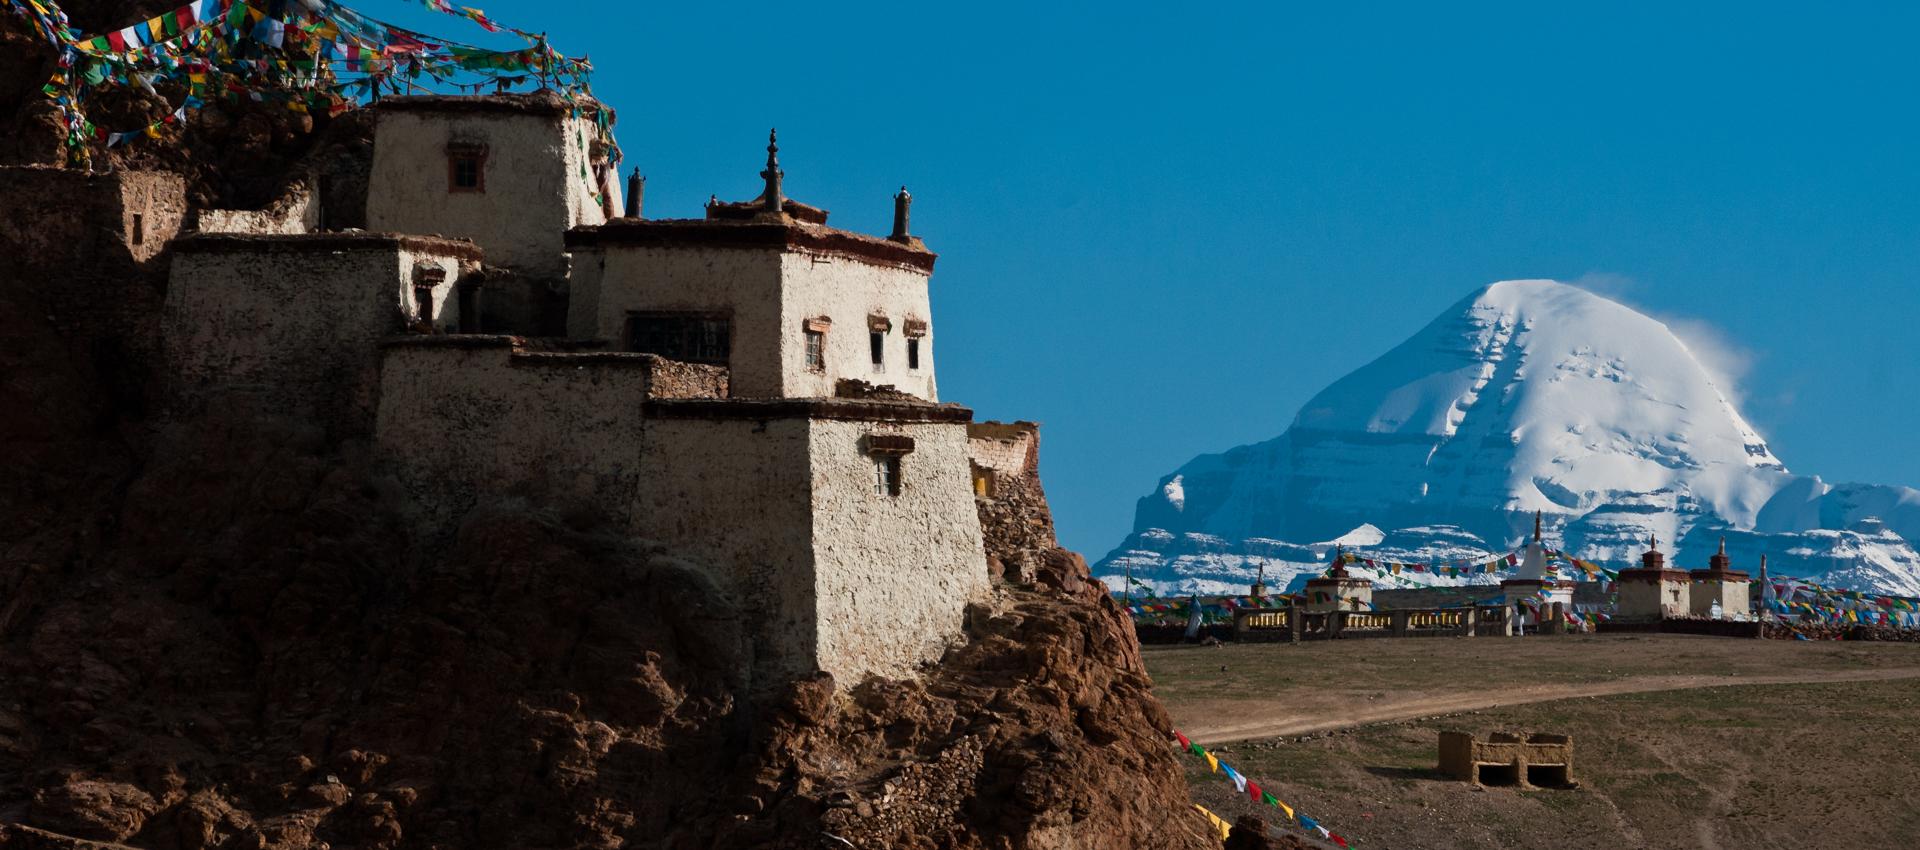 Fete au Tibet